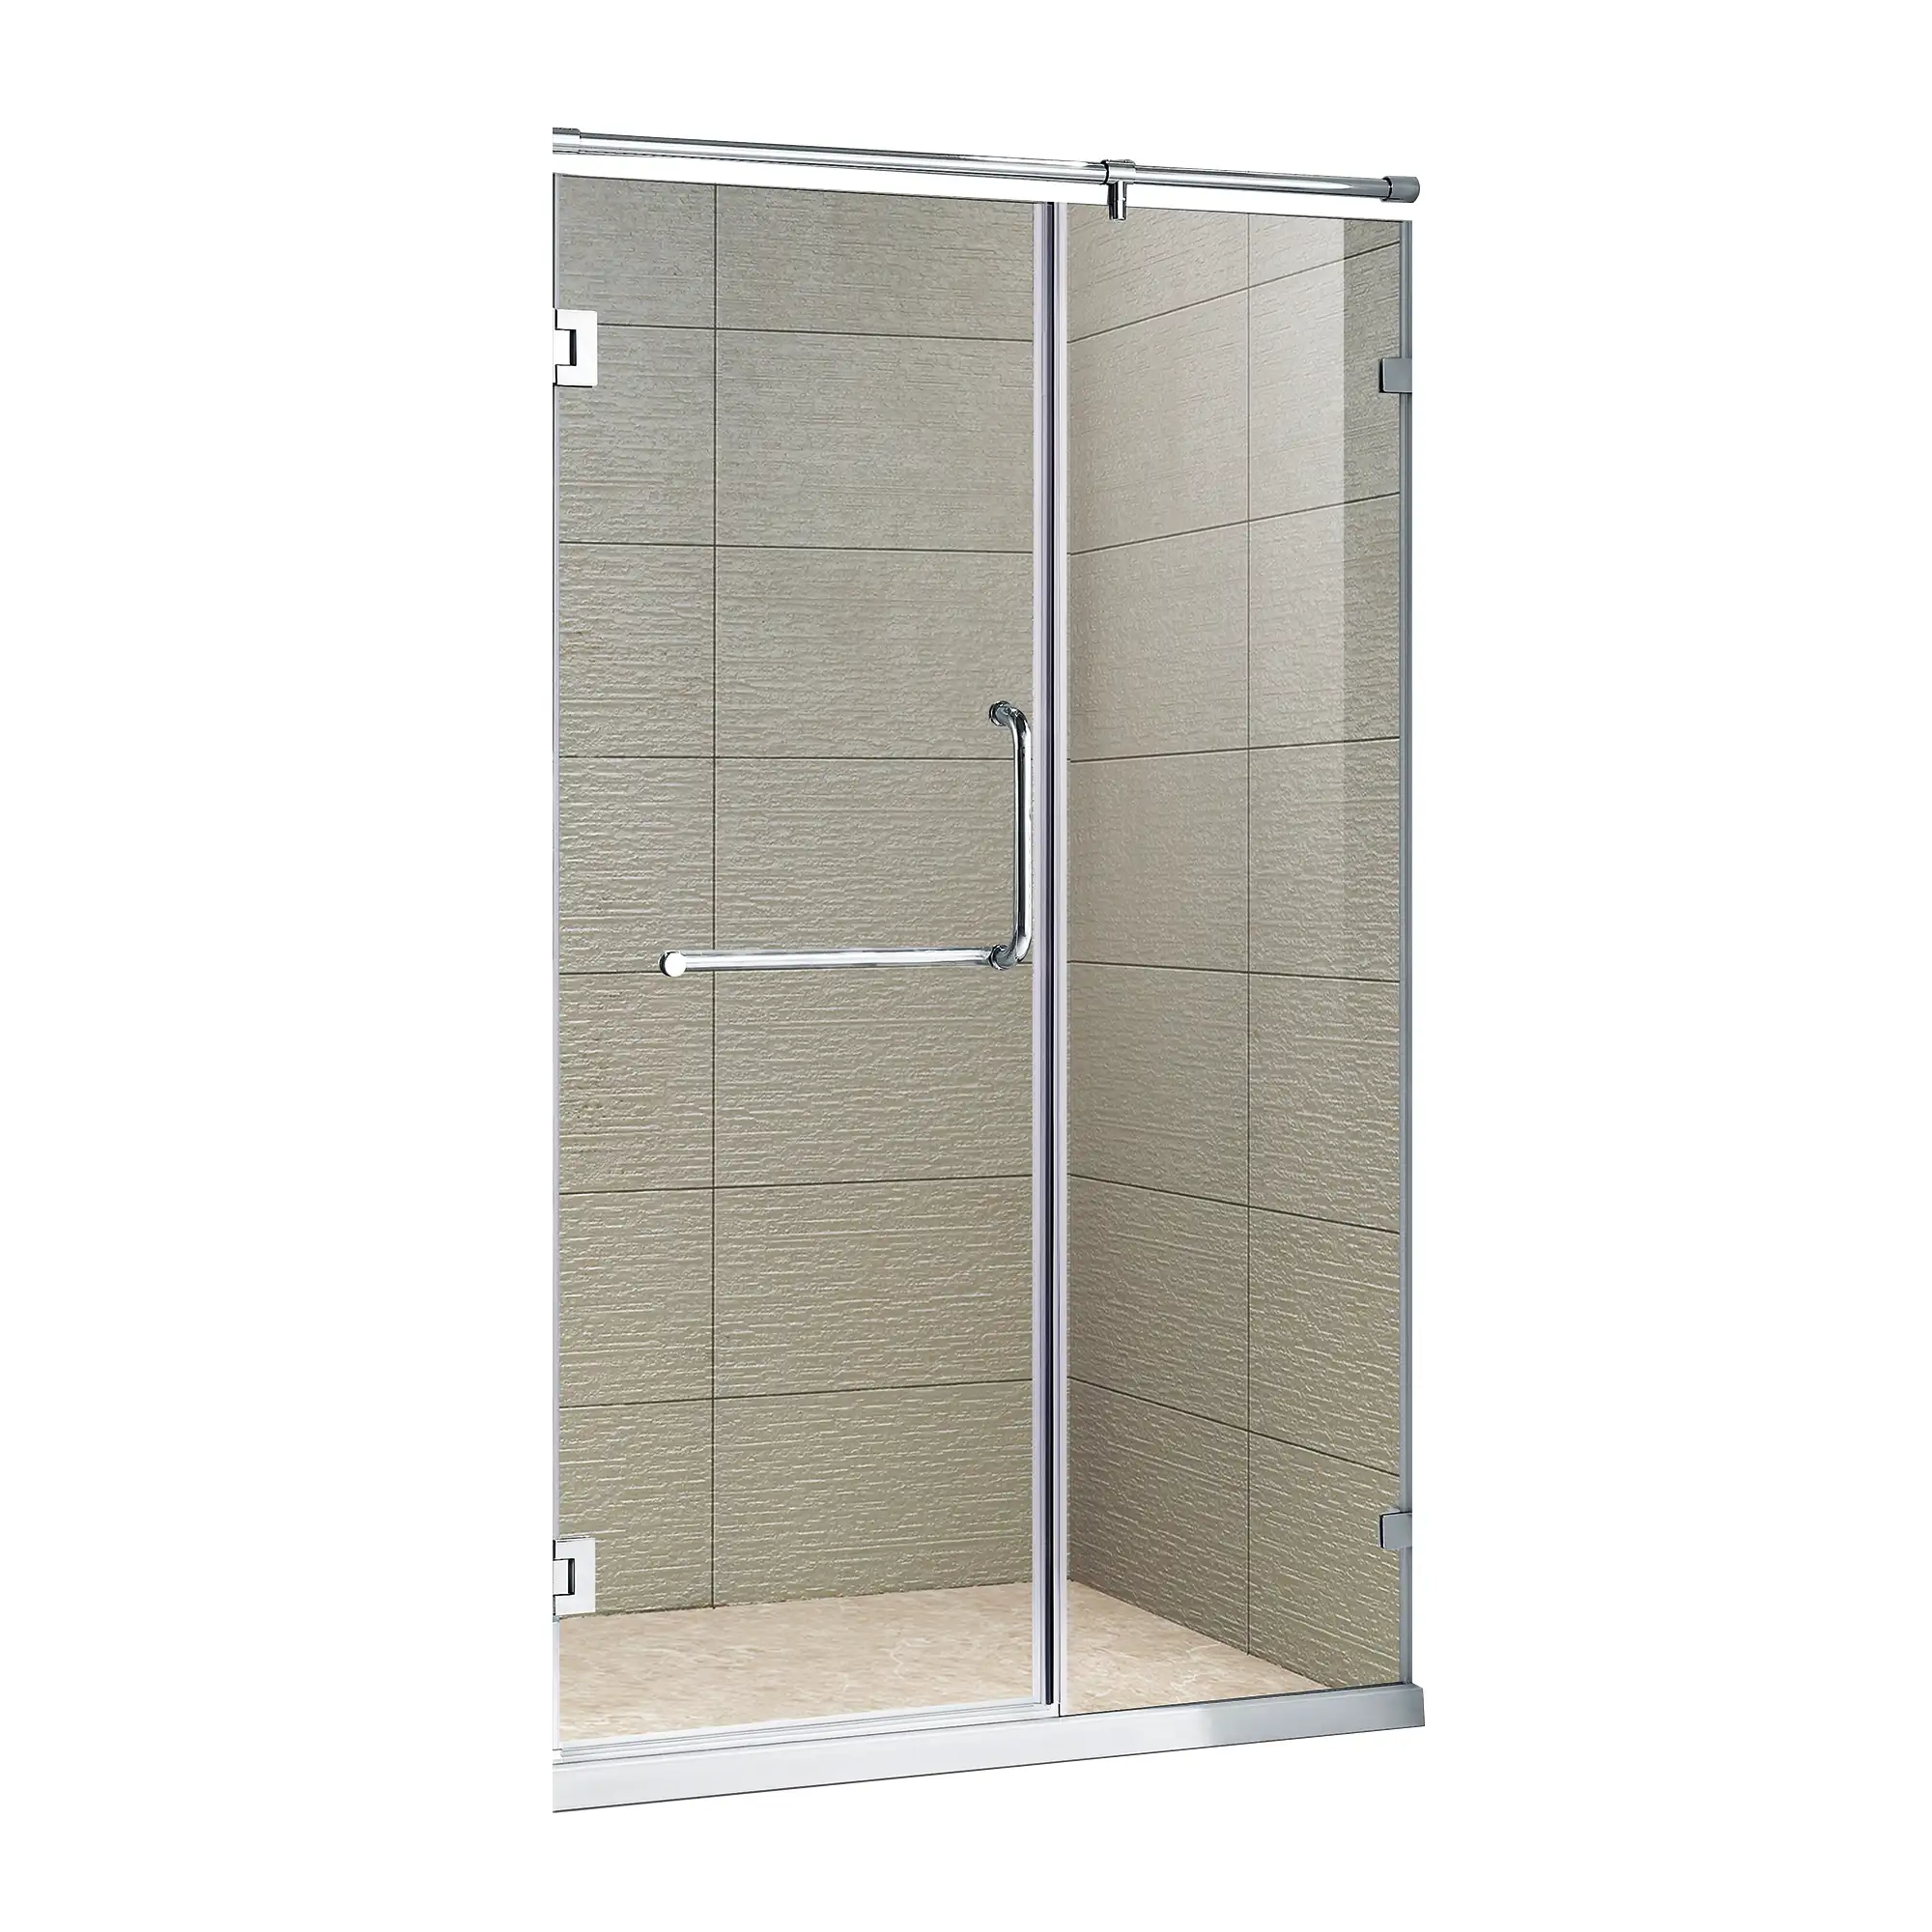 KMRY-bisagra de acero inoxidable para baño, diseño de calidad, puertas de ducha de vidrio sin marco